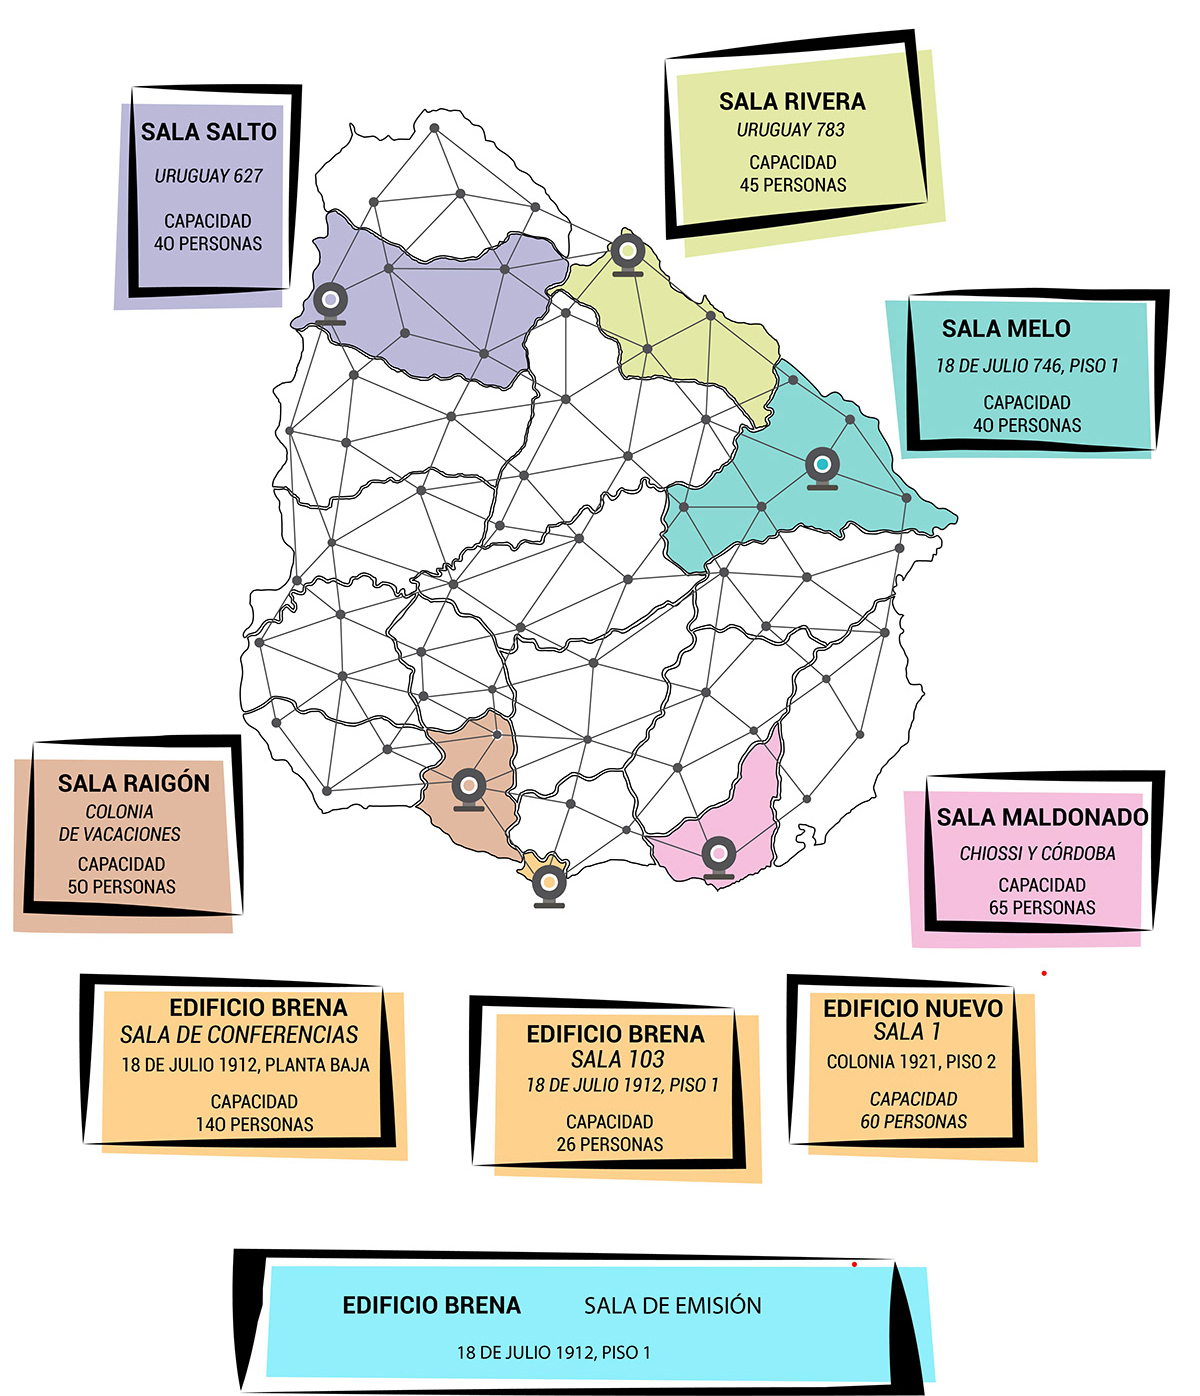 Mapa de Uruguay con salas de videoconferencia